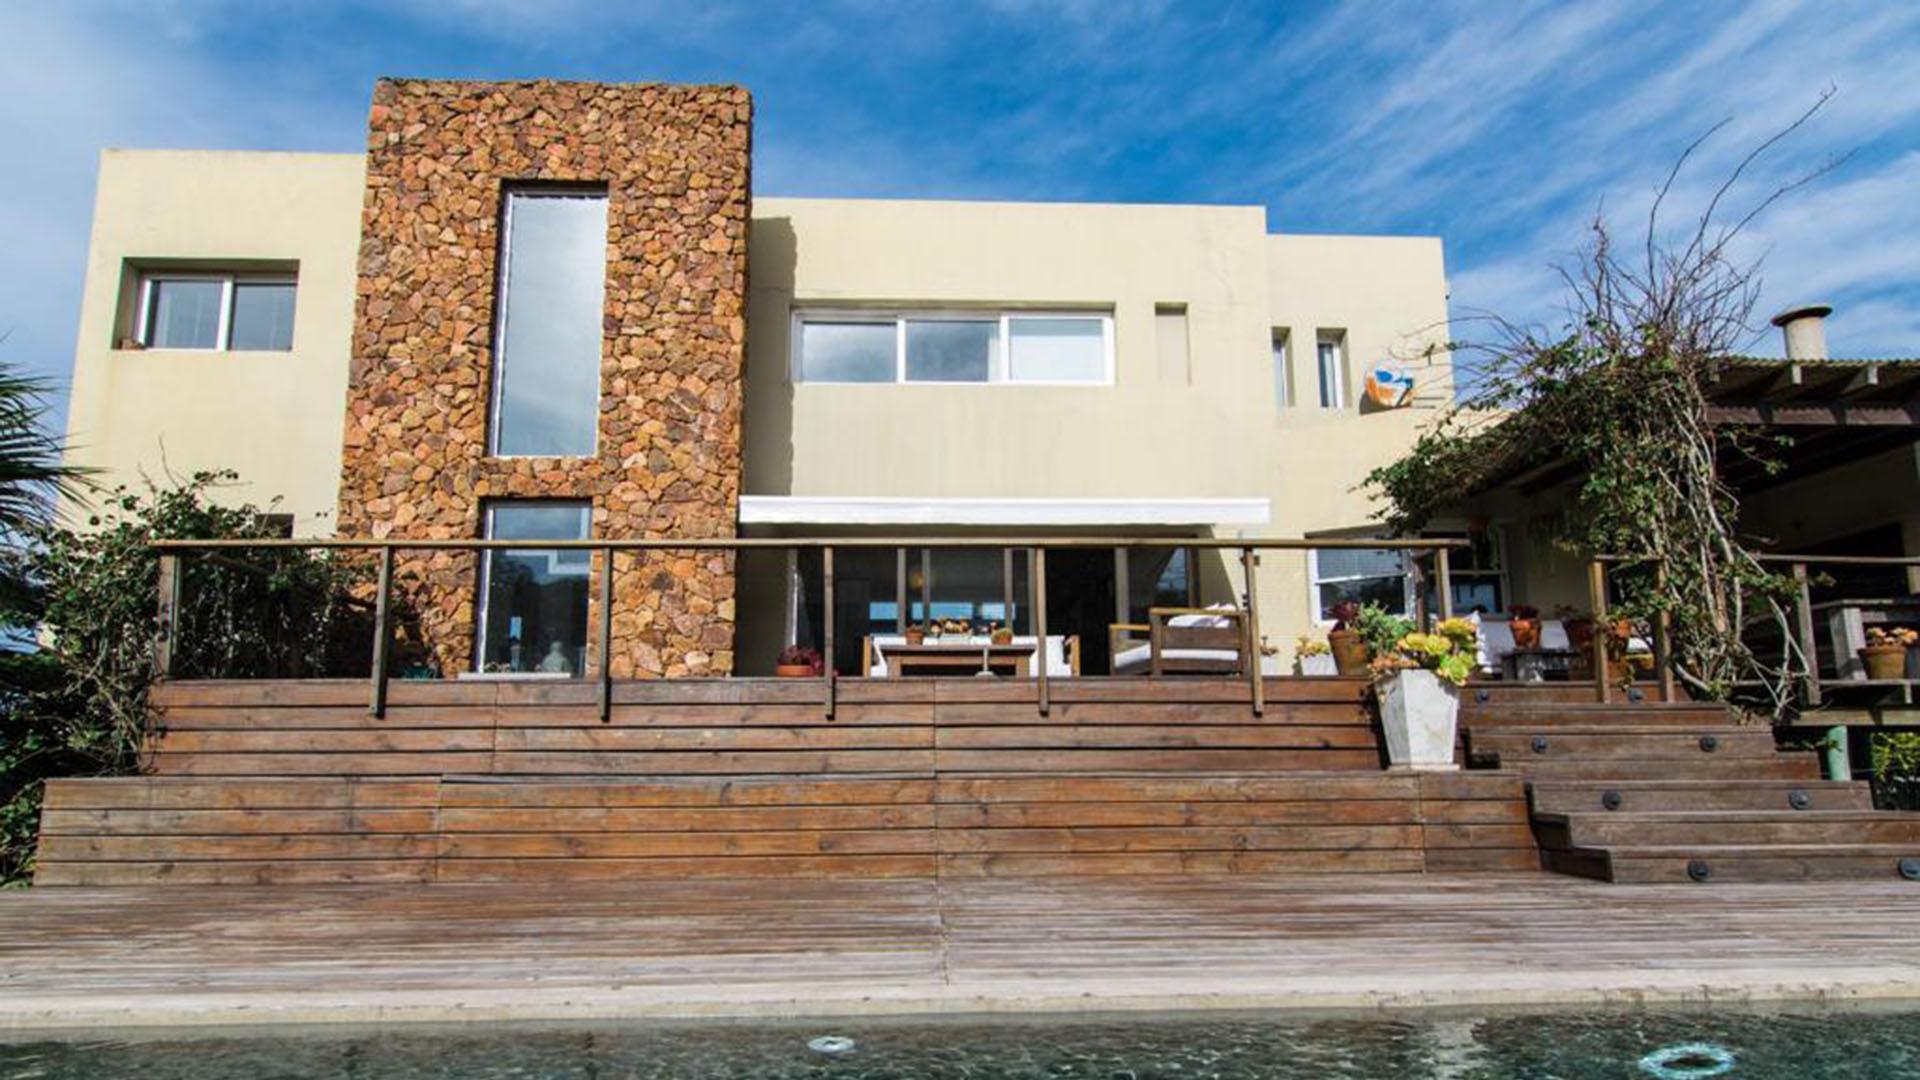 Cozy Ocean-View Villa located in Jose Ignacio, Punta del Este, Uruguay, listed by Curiocity Villas.